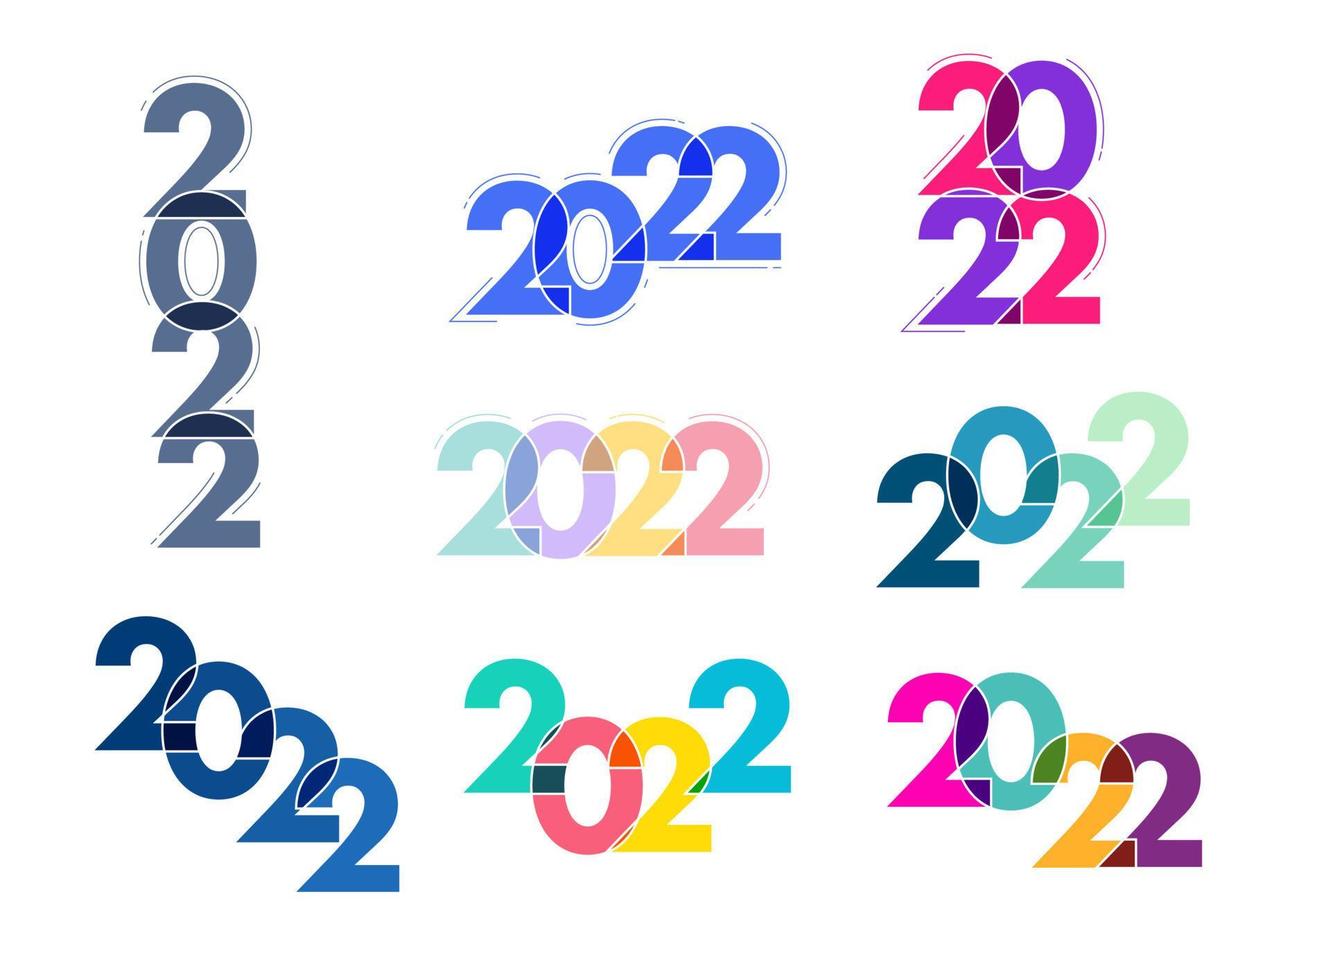 2022 feliz ano novo design de texto do logotipo, ilustração vetorial vetor